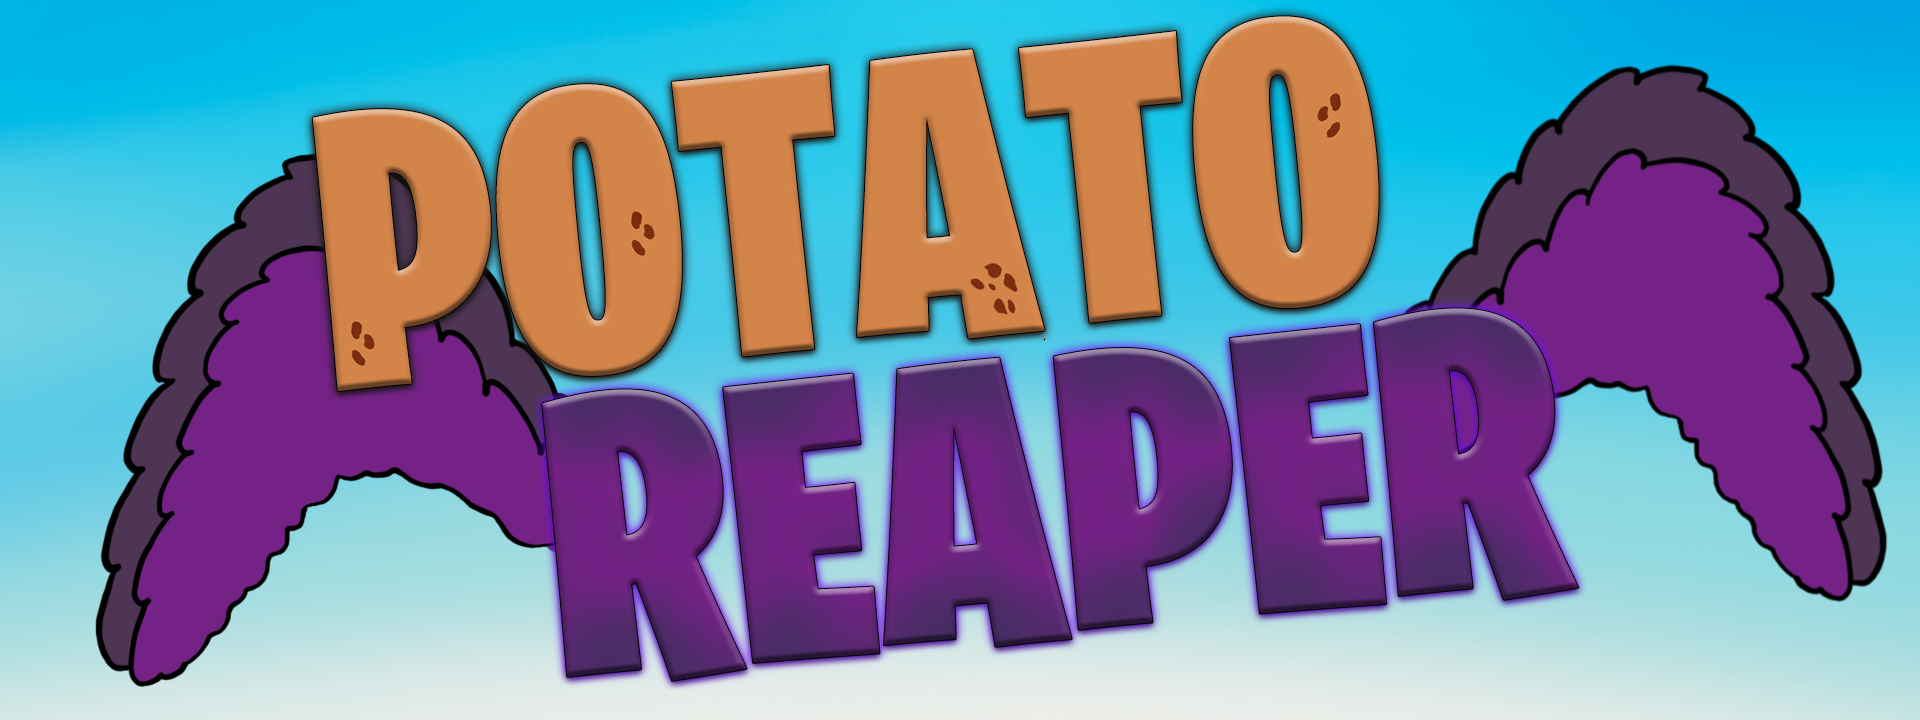 Potato Reaper